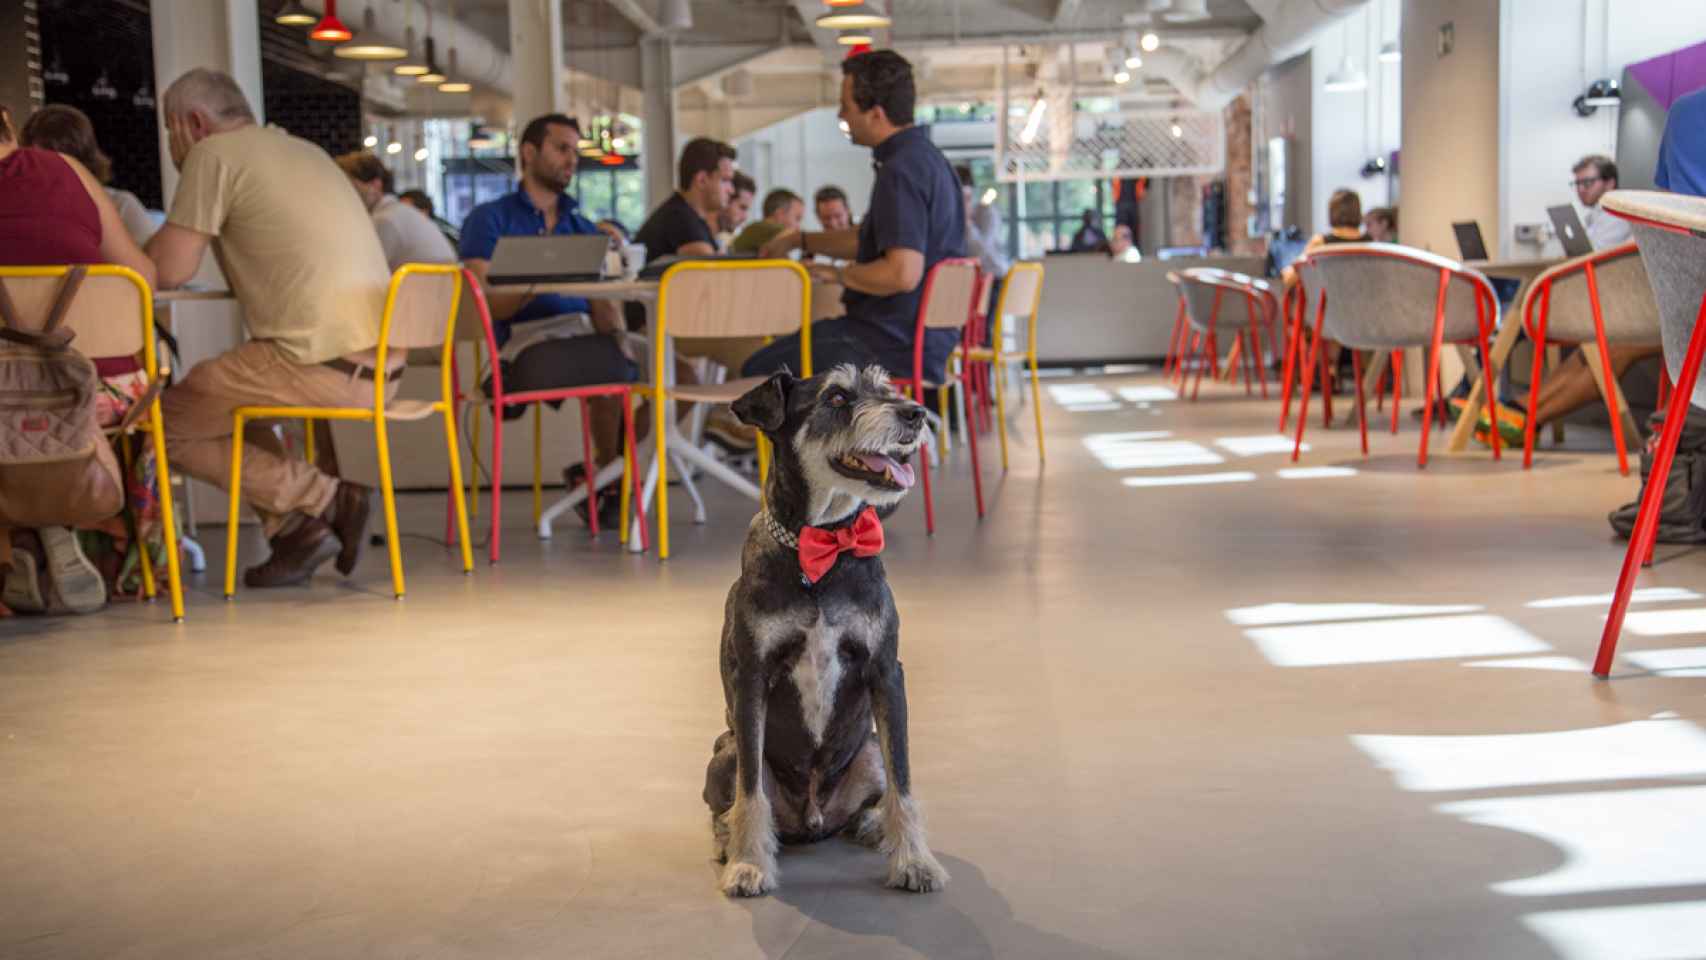 Colega, un can, compartiendo espacio con otras personas en un local de coworking. /